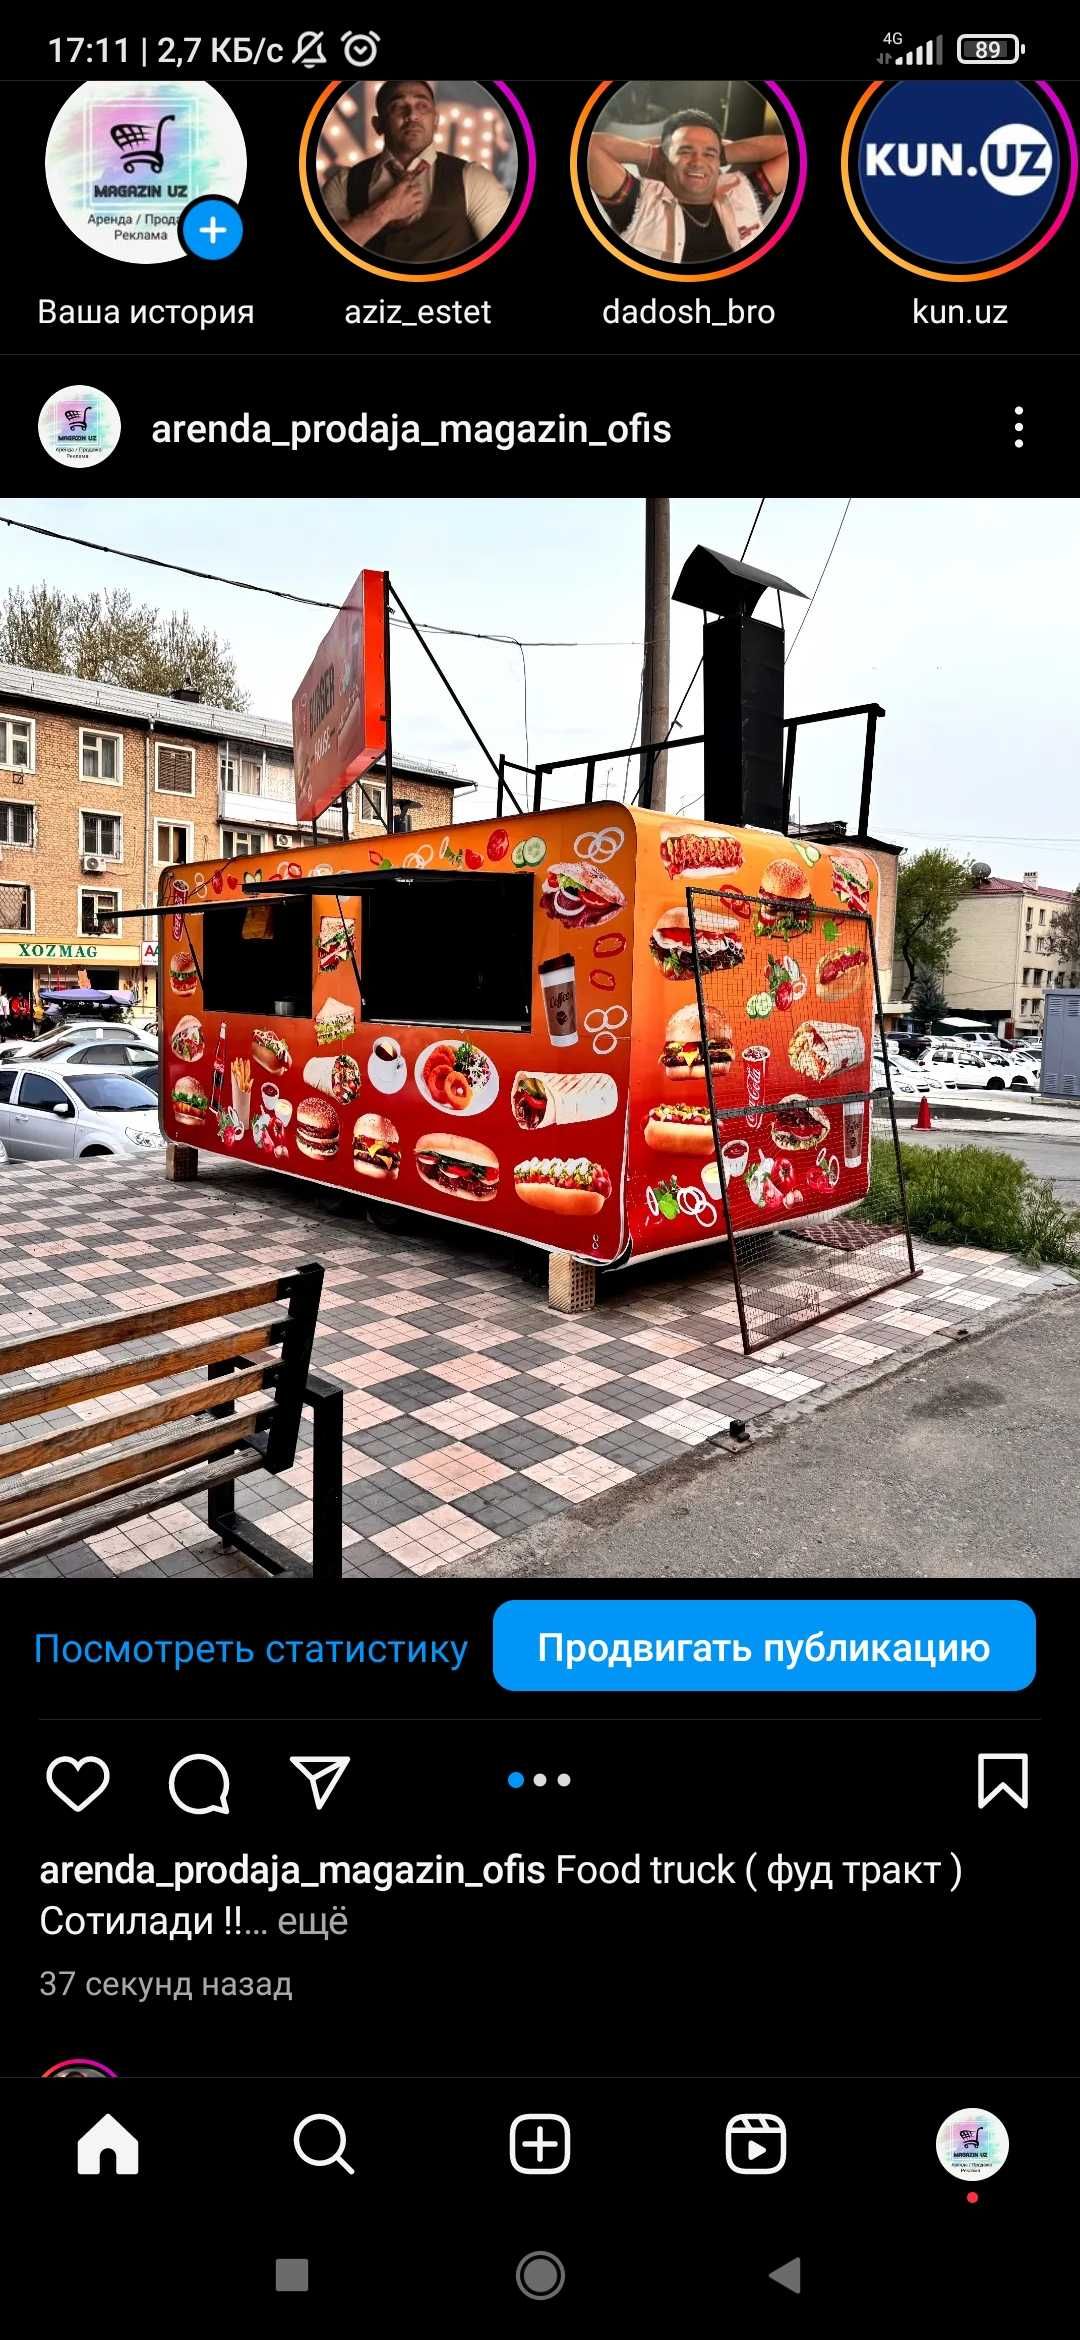 Food truck Сотилади